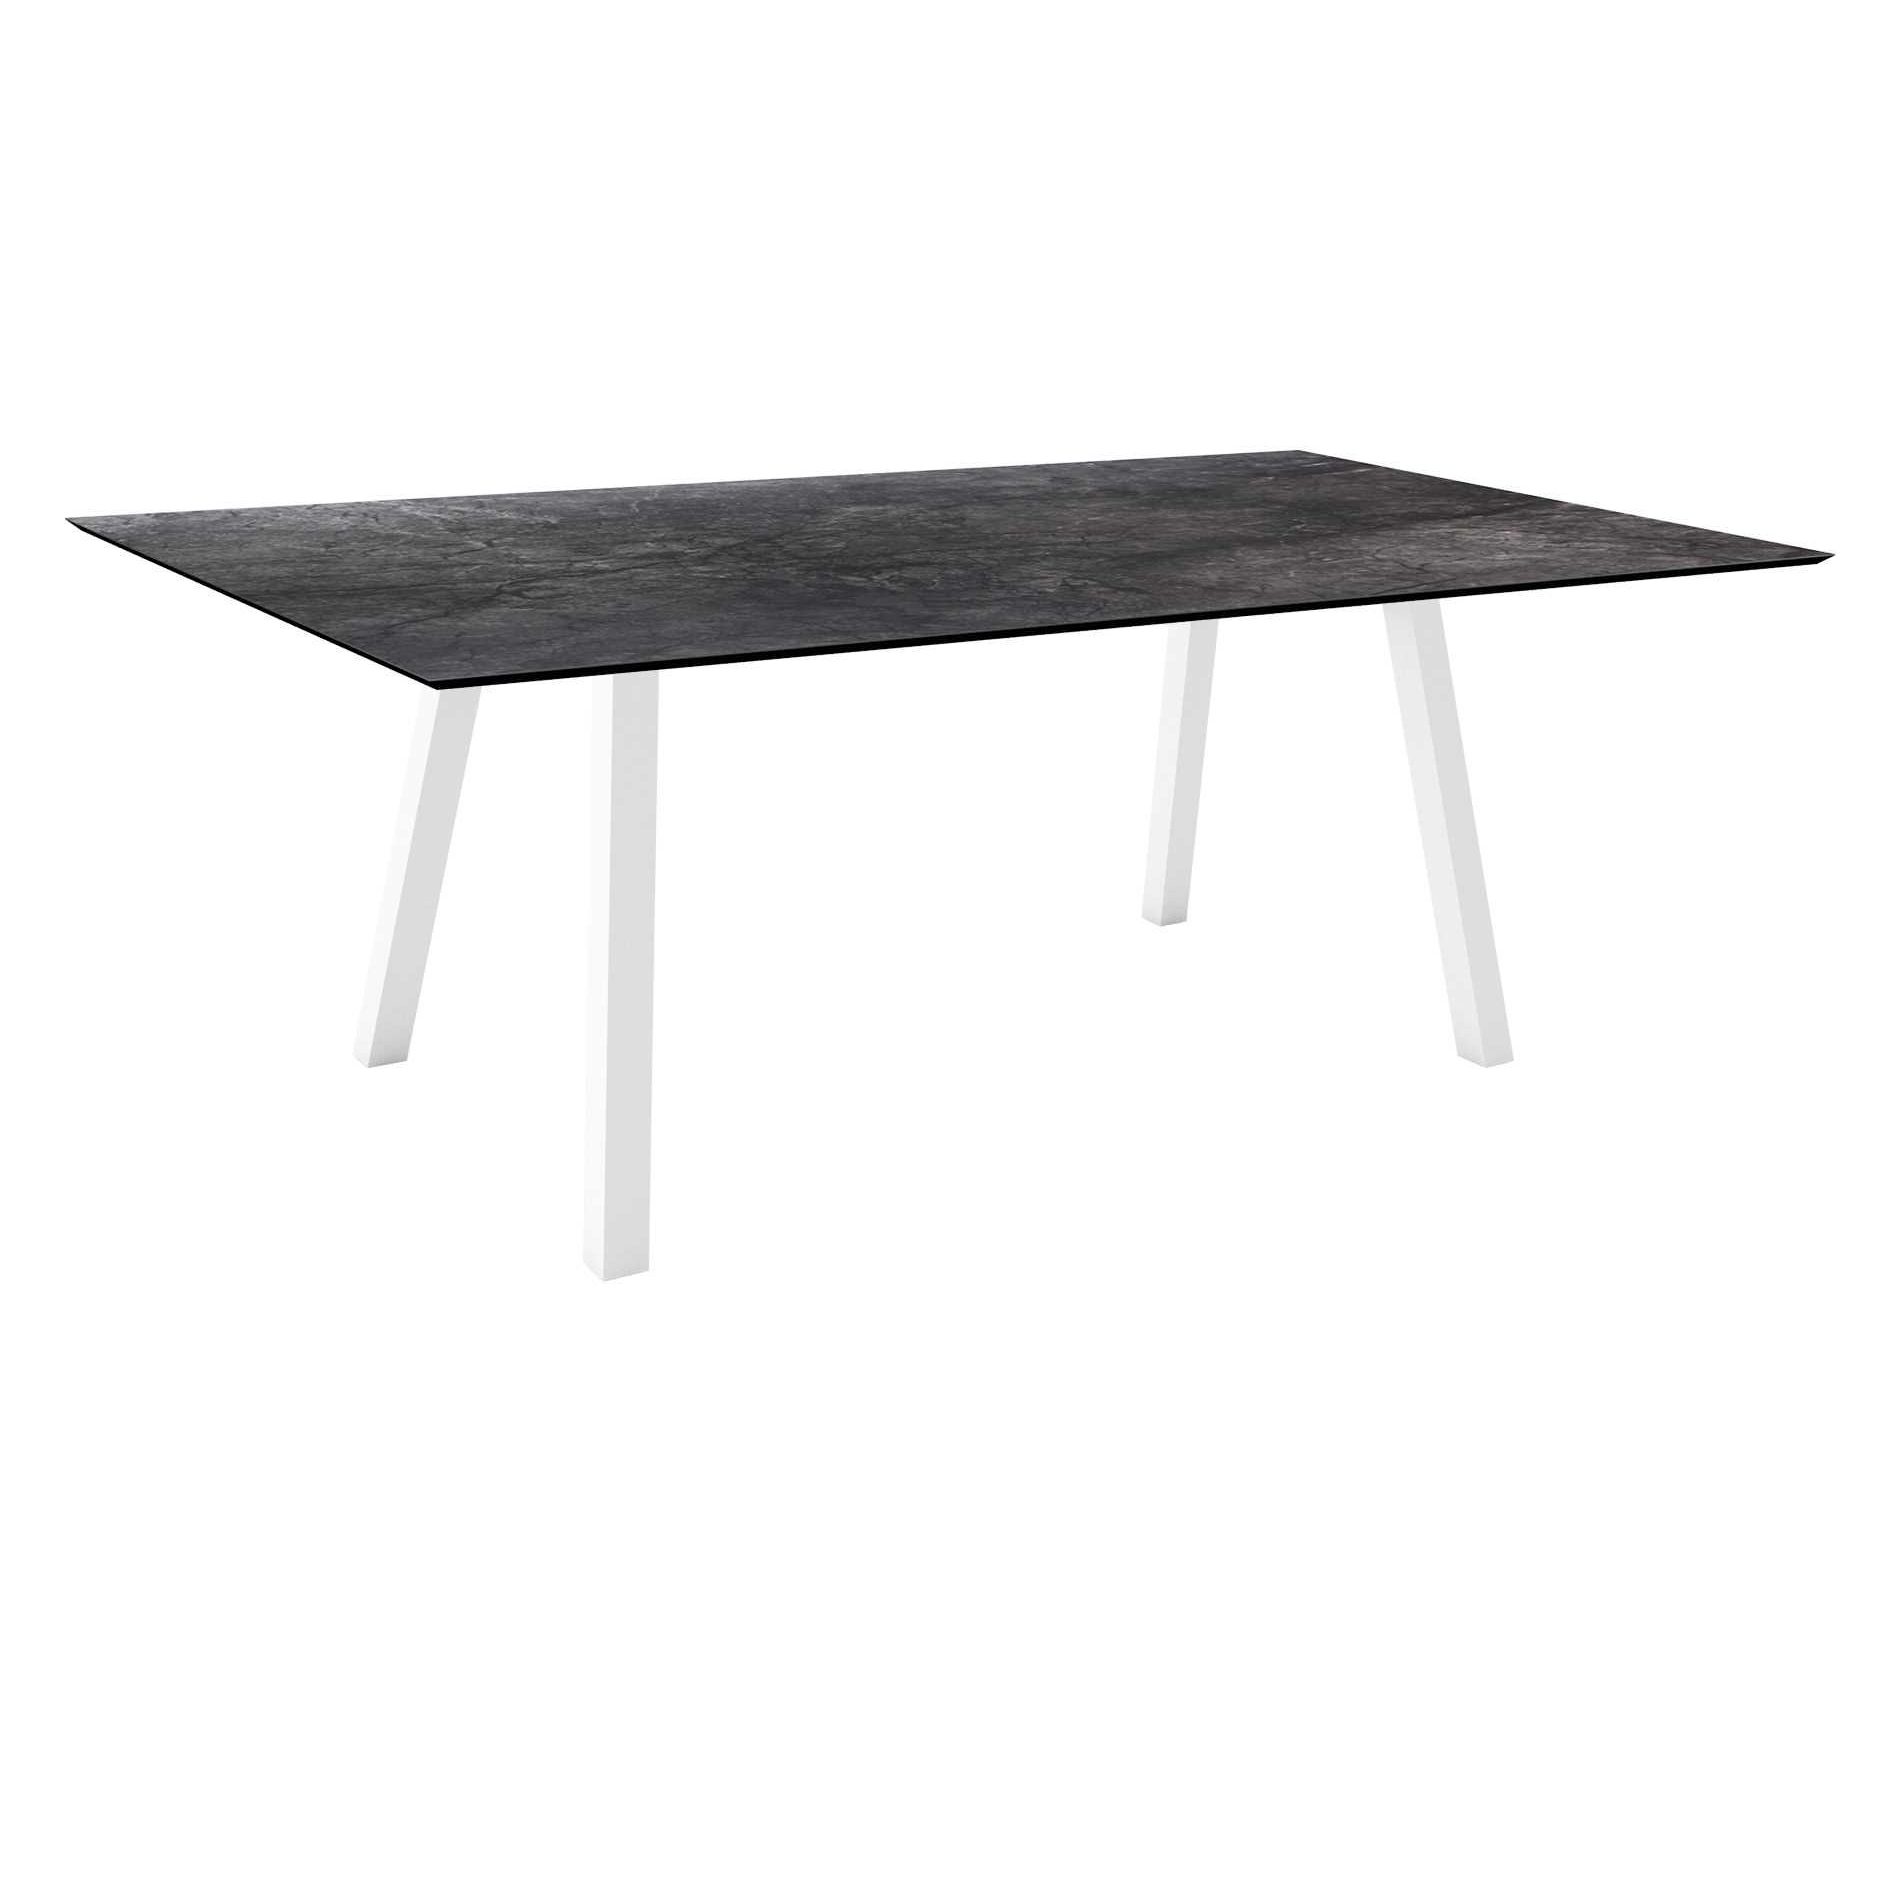 Stern Tisch "Interno", Größe 180x100cm, Alu weiß, Vierkantrohr, Tischplatte HPL Dark Marble